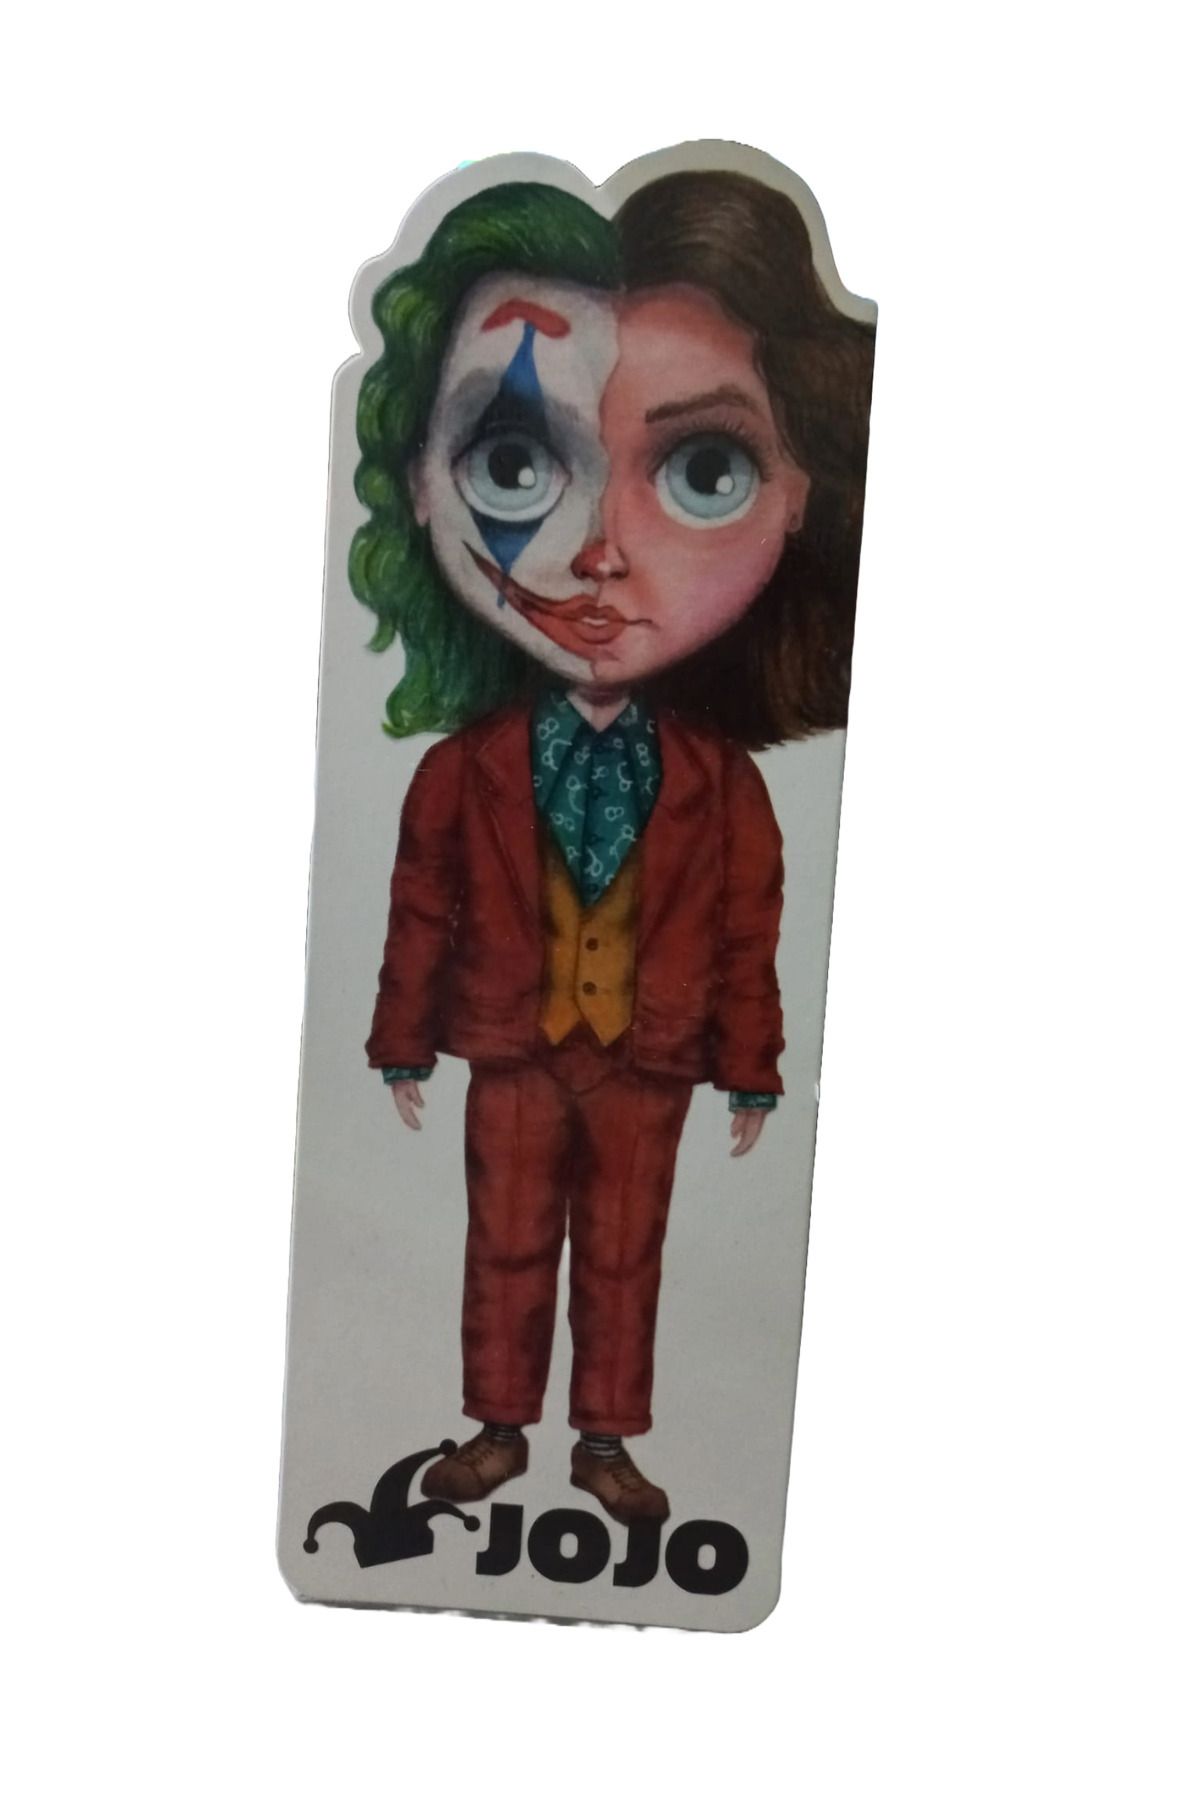 Kıvırcık Senyorita TM Kitap Ayracı - Joker Desenli Kitap Ayrıca - Kalın Kaliteli Kitap Ayracı - Desenli Ayraç